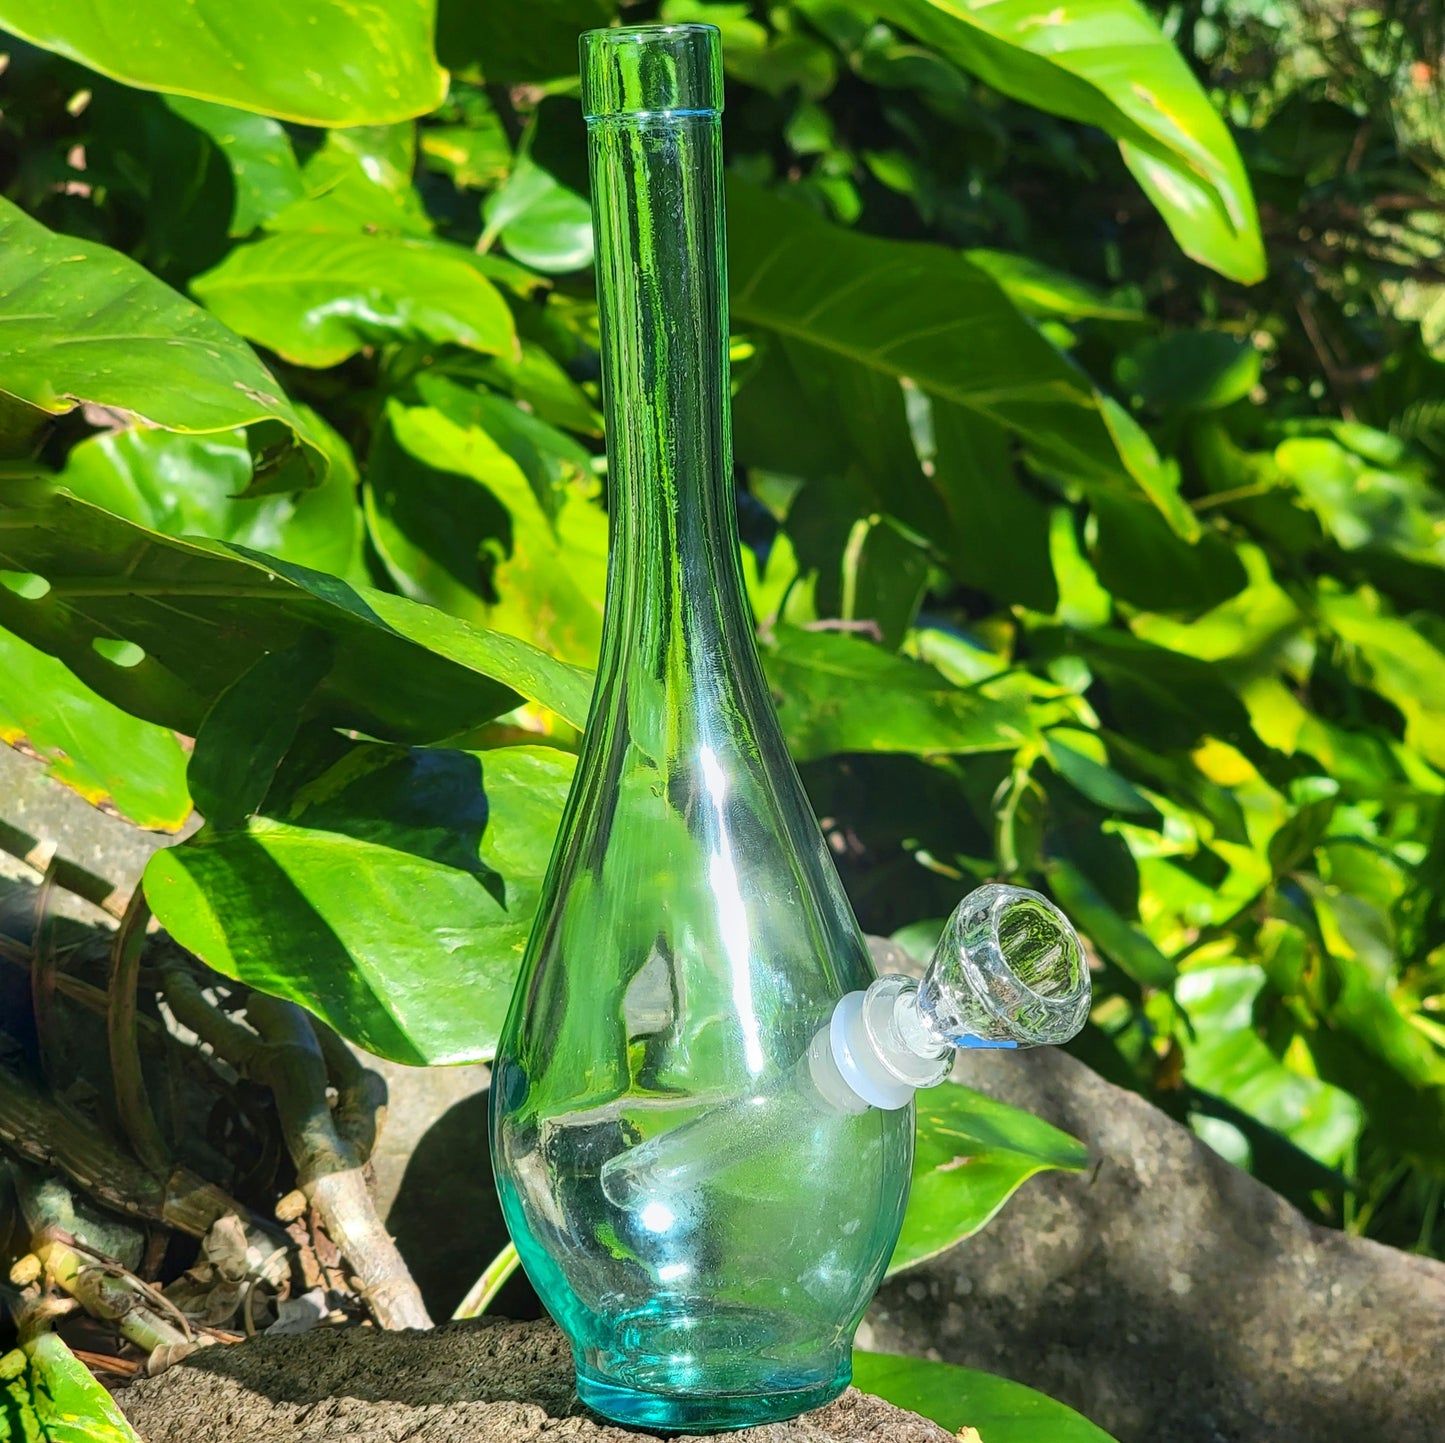 "Bottle Bong" Upcycled Glass Bottle Bong